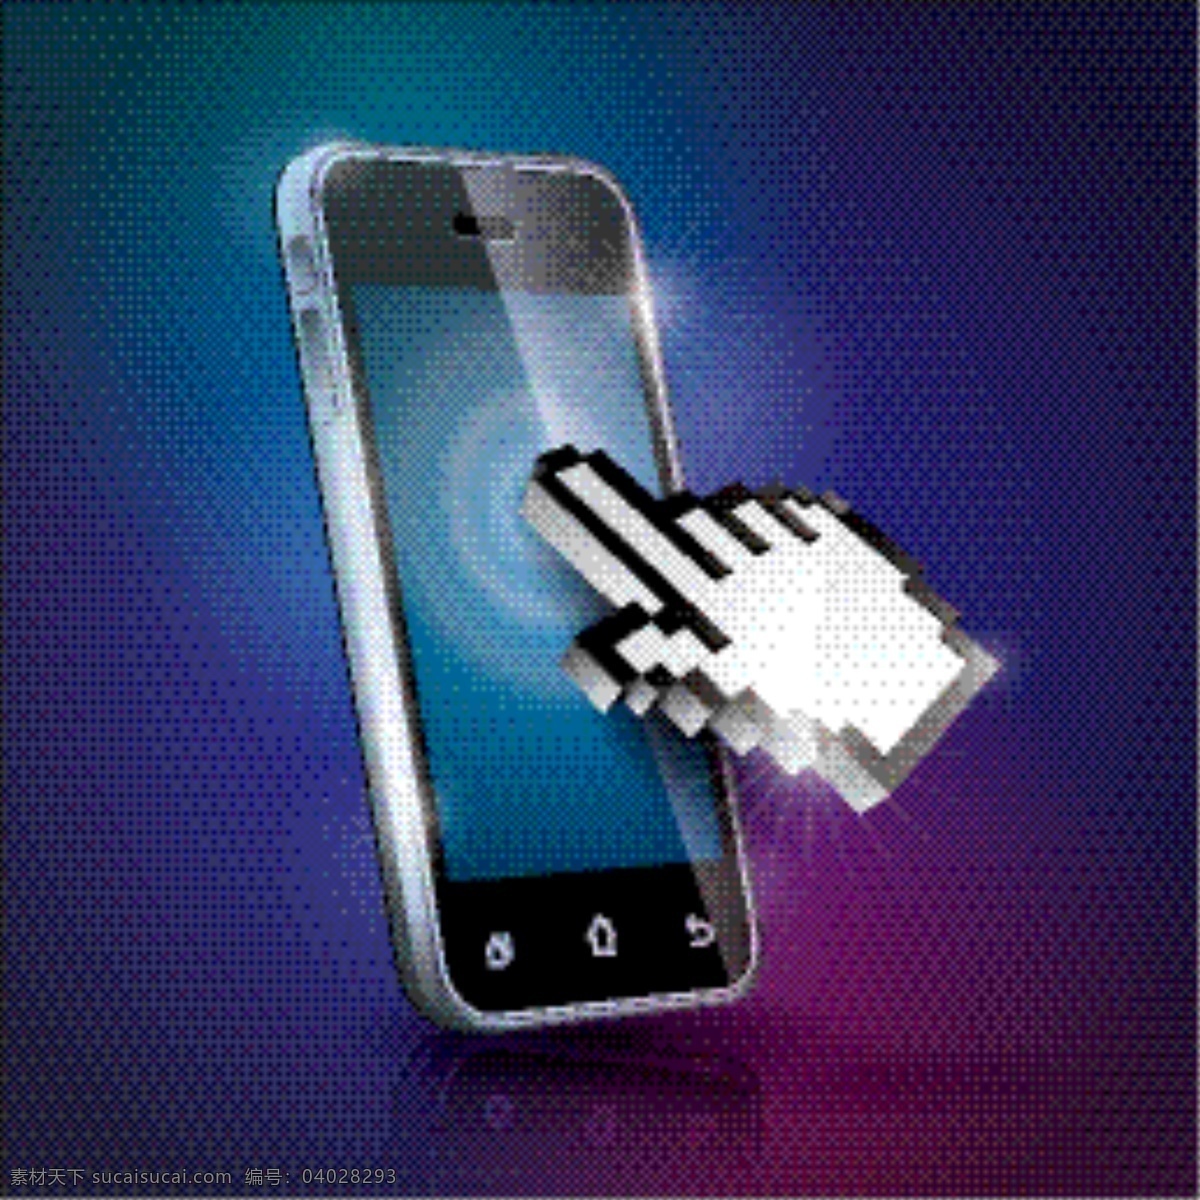 精湛 技术产品 矢量 材料 产品 触摸 光 互联网 技术 精致 科技 趋势 手机 手指 晕 现代 鼠标 网络 星光 载体材料 矢量图 现代科技